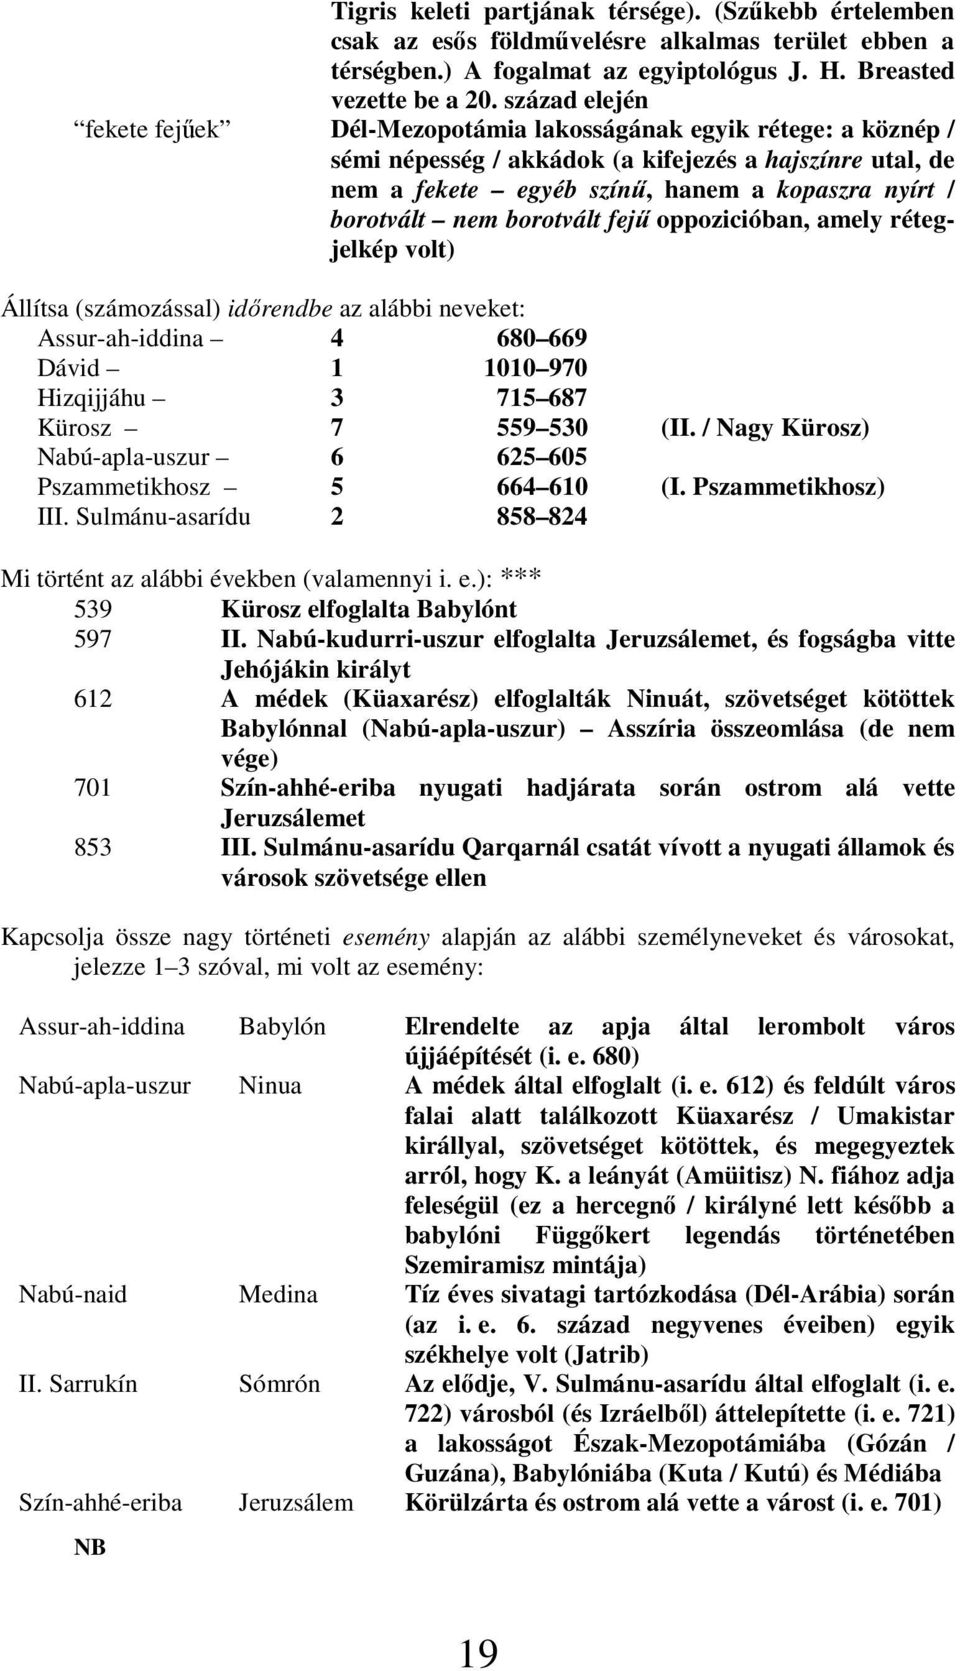 borotvált nem borotvált fejő oppozicióban, amely rétegjelkép volt) Állítsa (számozással) idırendbe az alábbi neveket: Assur-ah-iddina 4 680 669 Dávid 1 1010 970 Hizqijjáhu 3 715 687 Kürosz 7 559 530